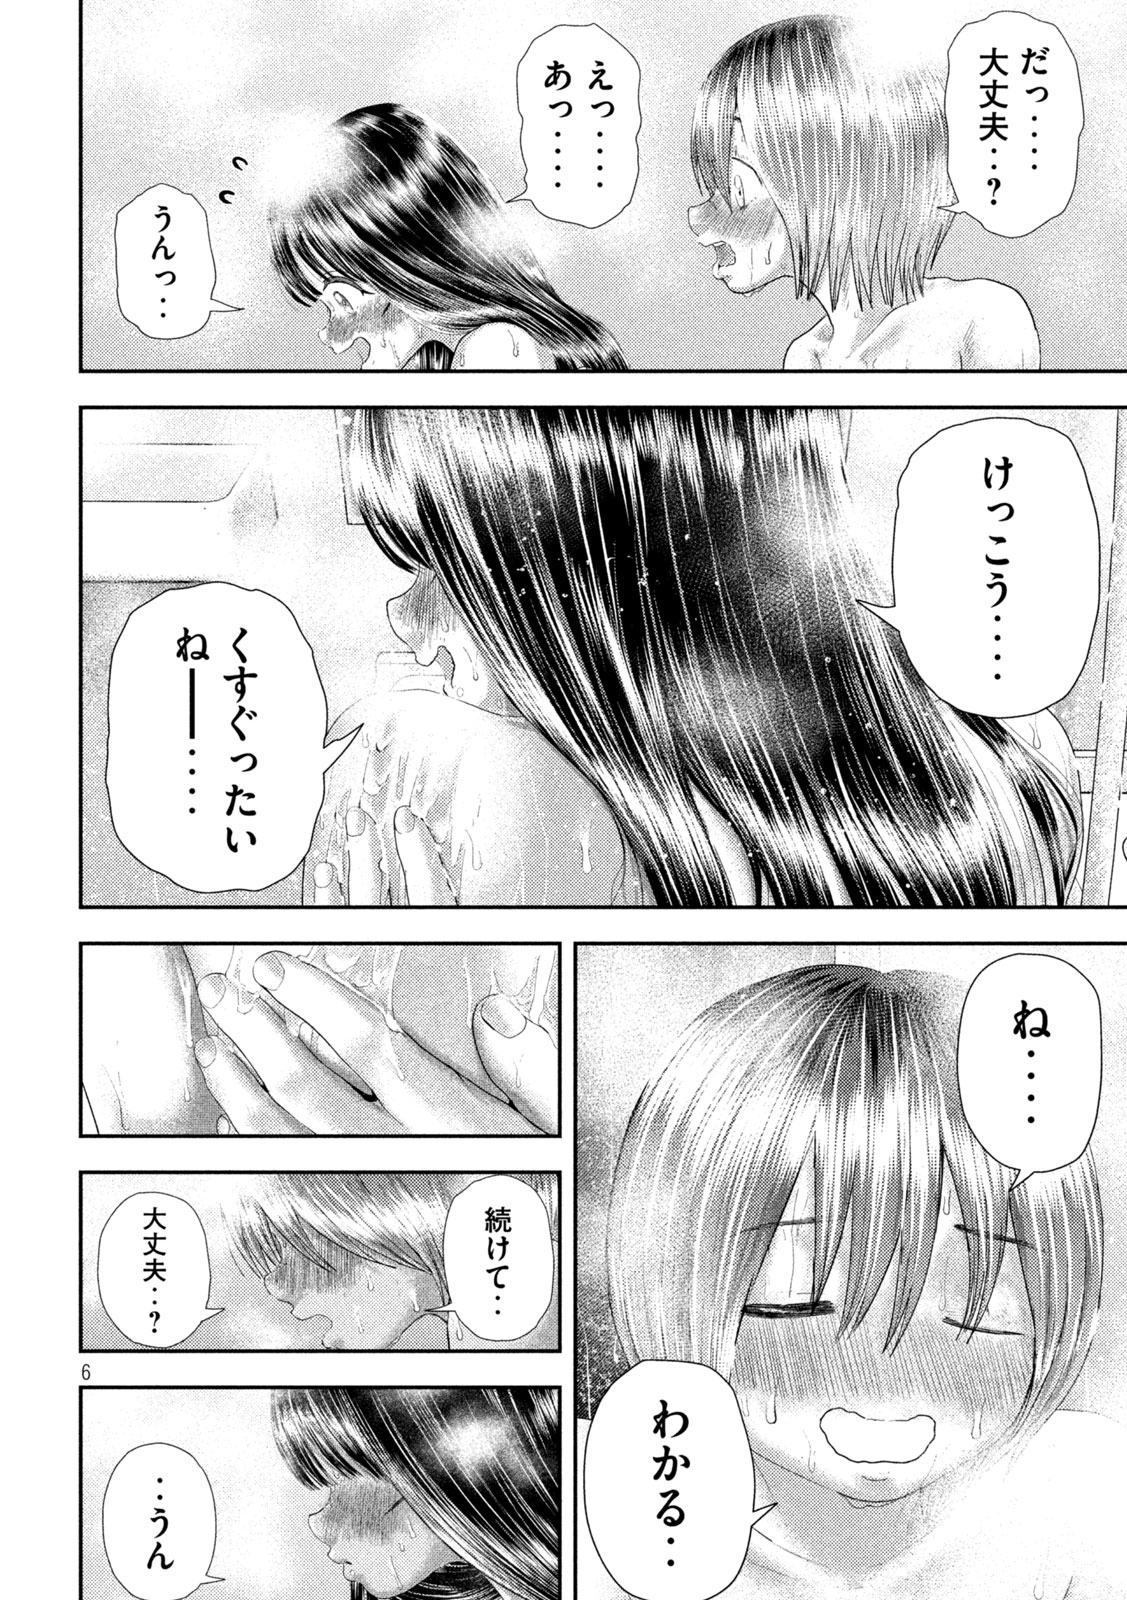 Nezumi no Koi - Chapter 28 - Page 6